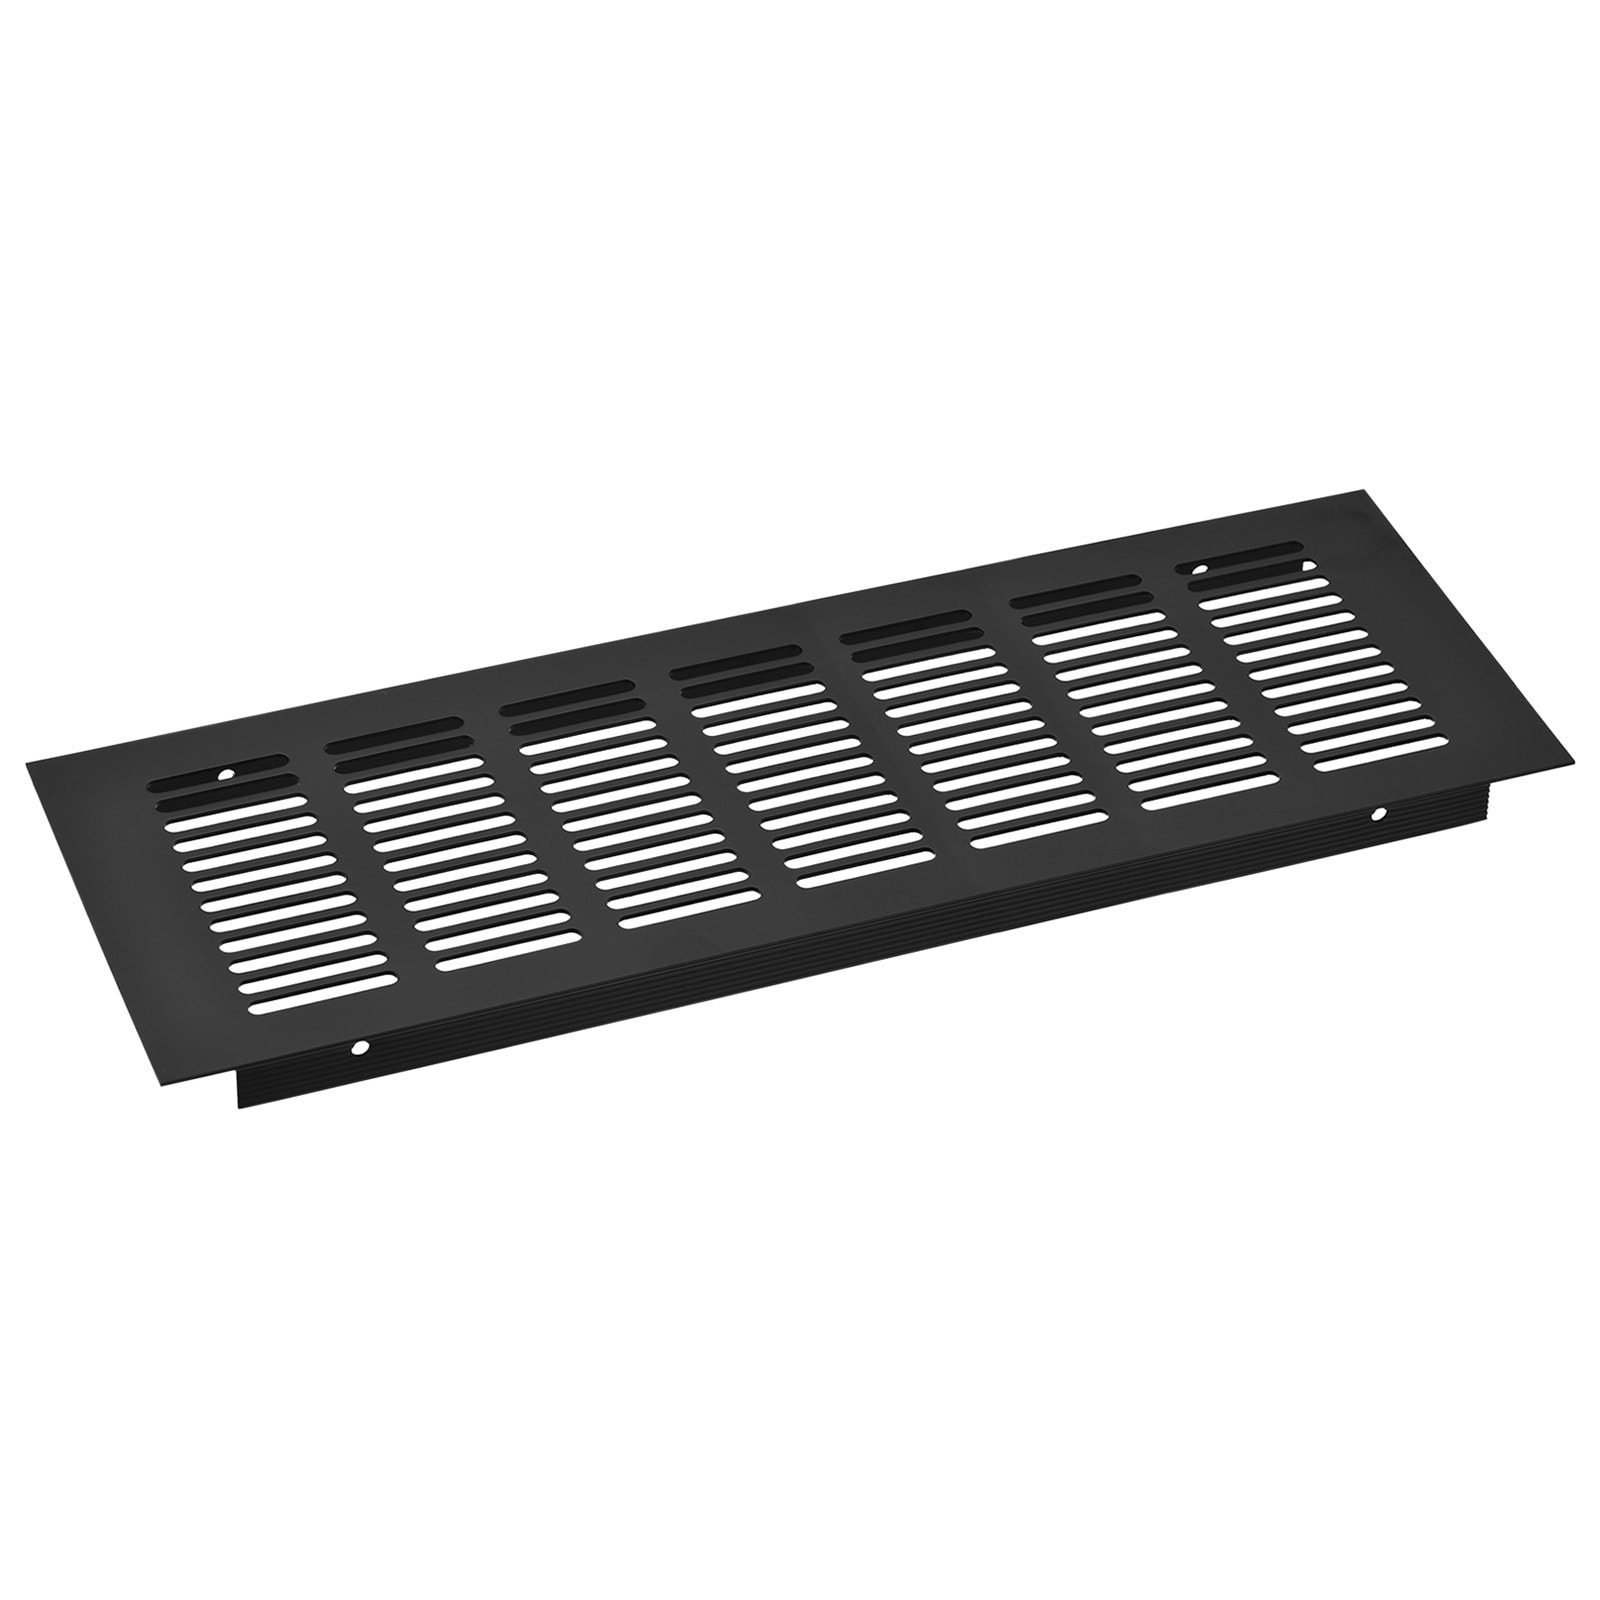 Ventilation grille - aluminium (500 x 60 mm)